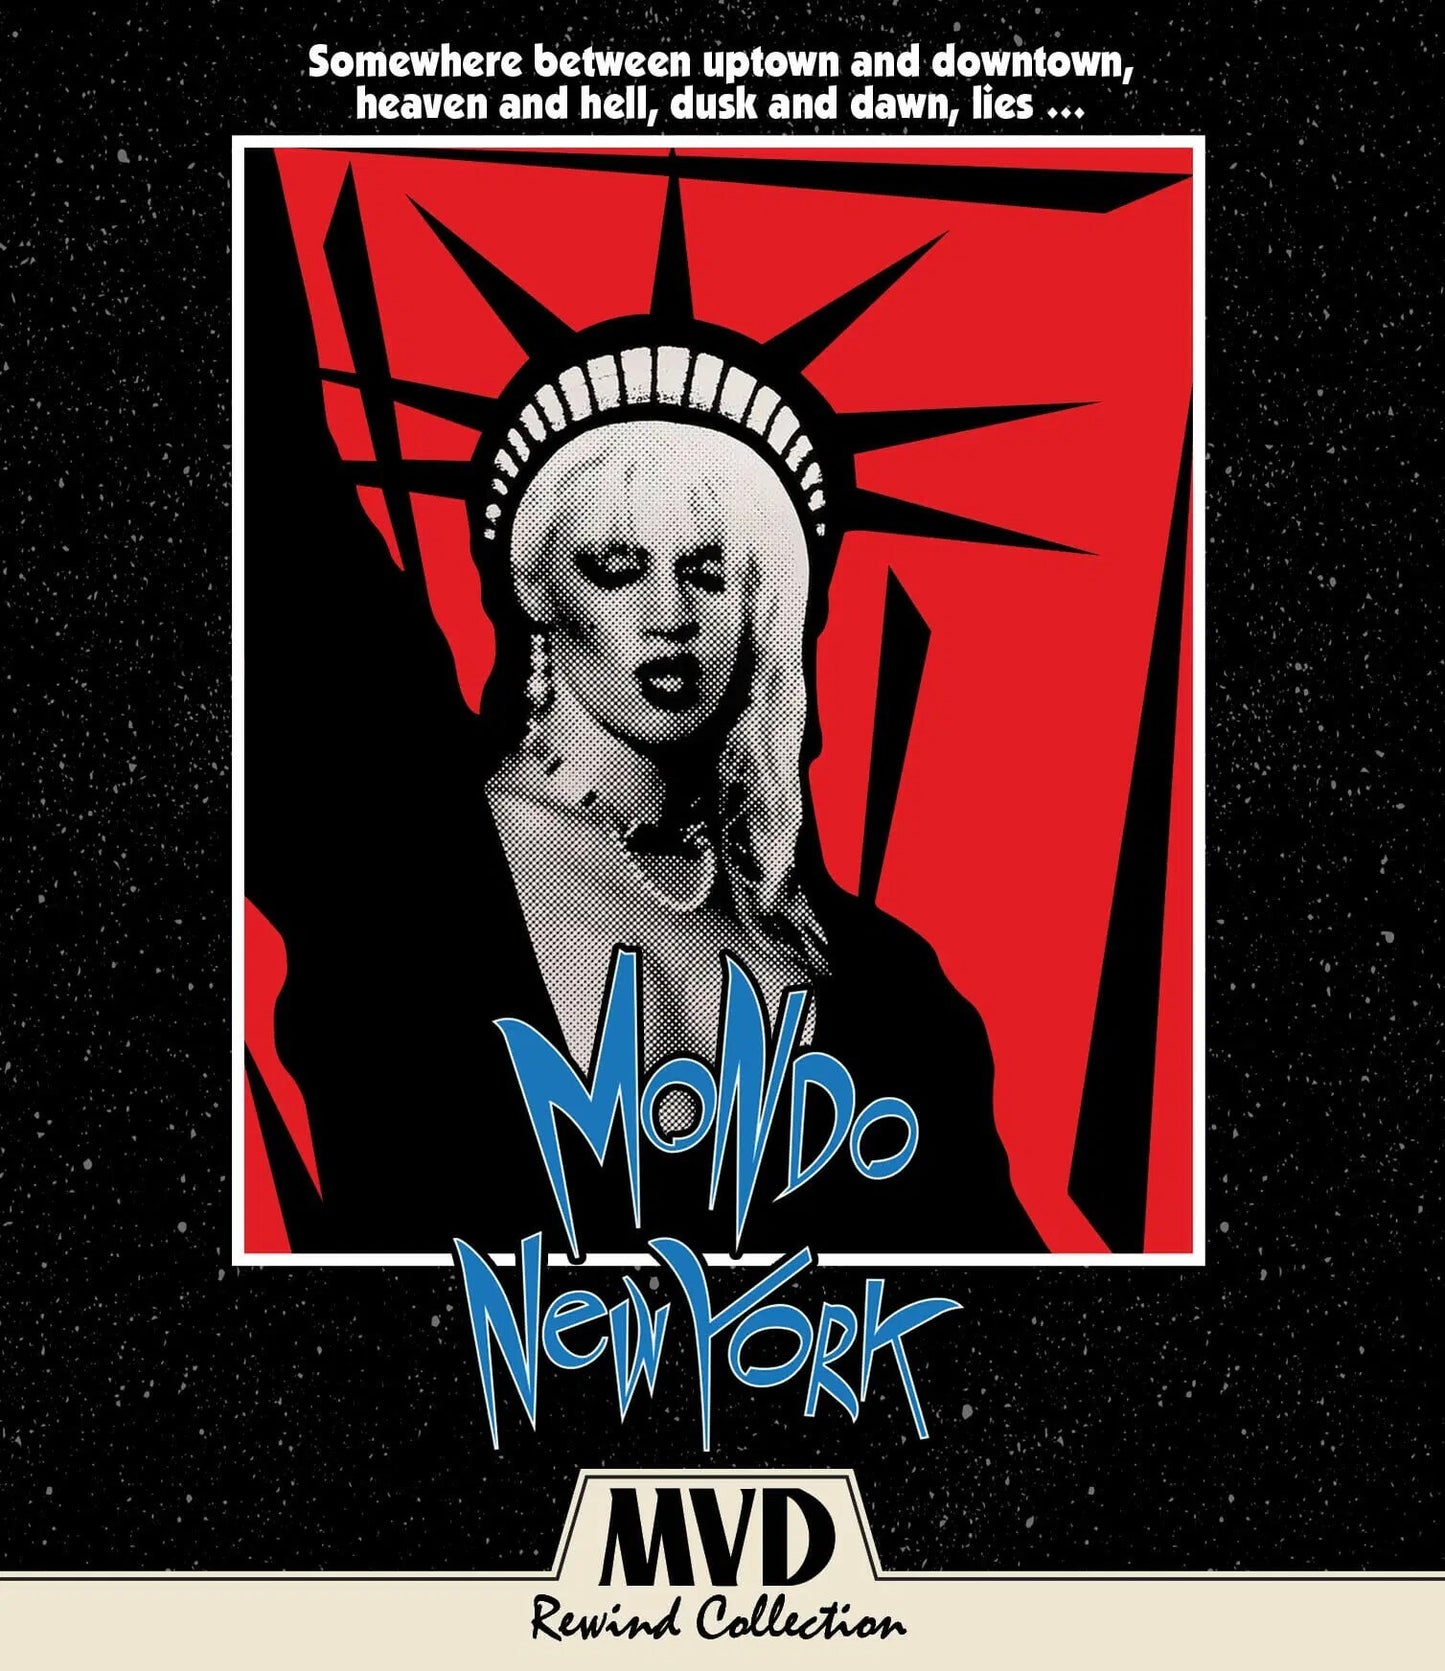 Mondo New York: MVD Rewind Collection